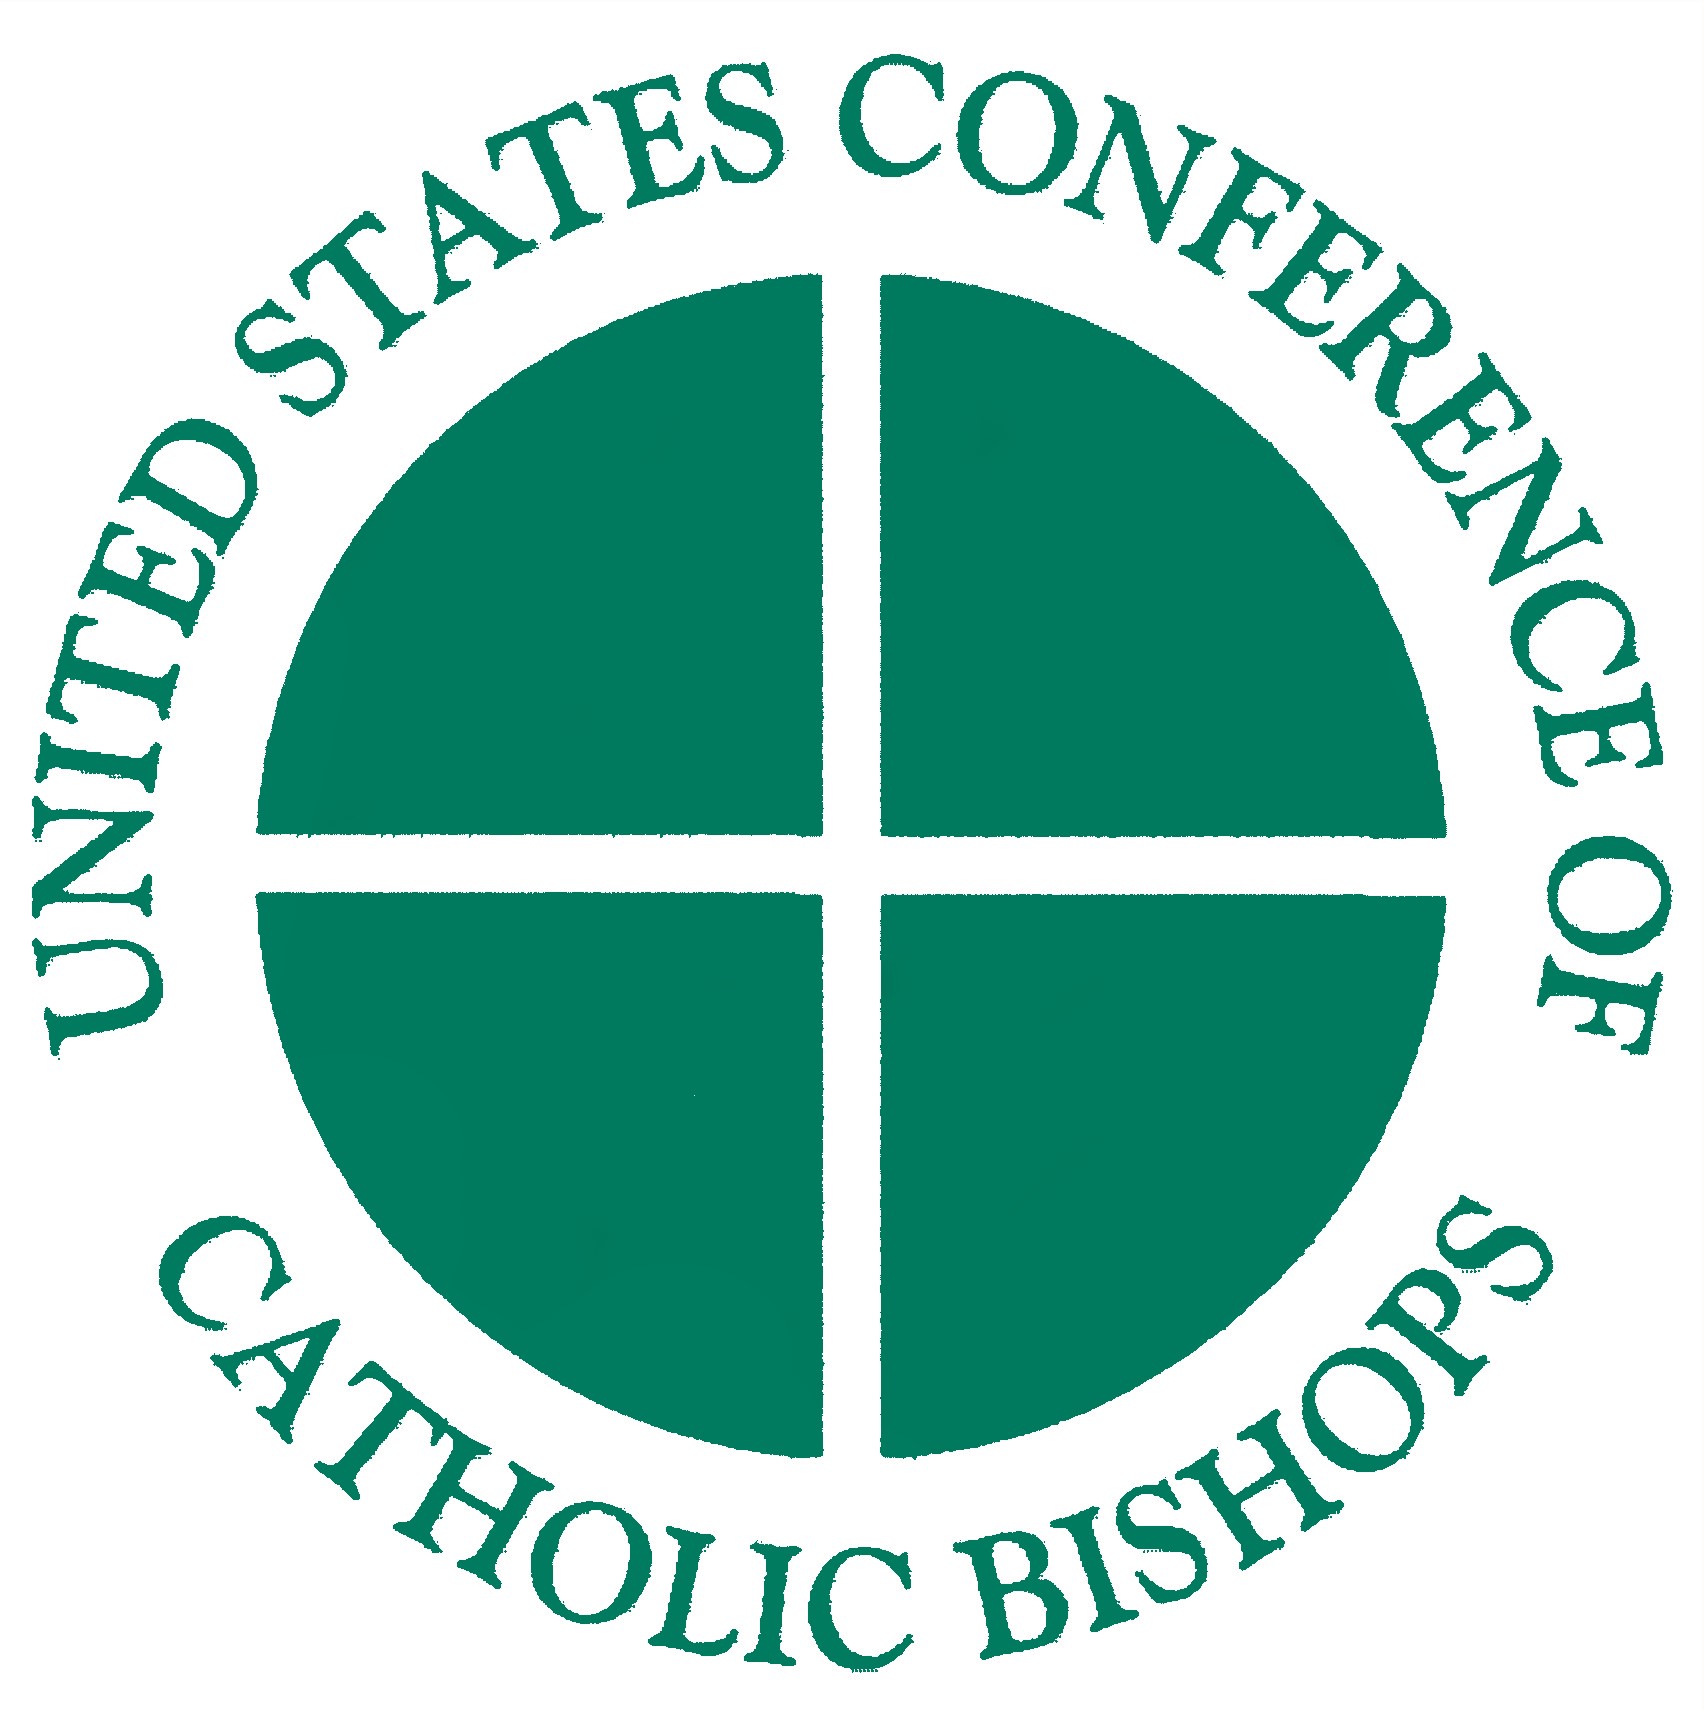 Káº¿t quáº£ hÃ¬nh áº£nh cho united states conference of catholic bishops